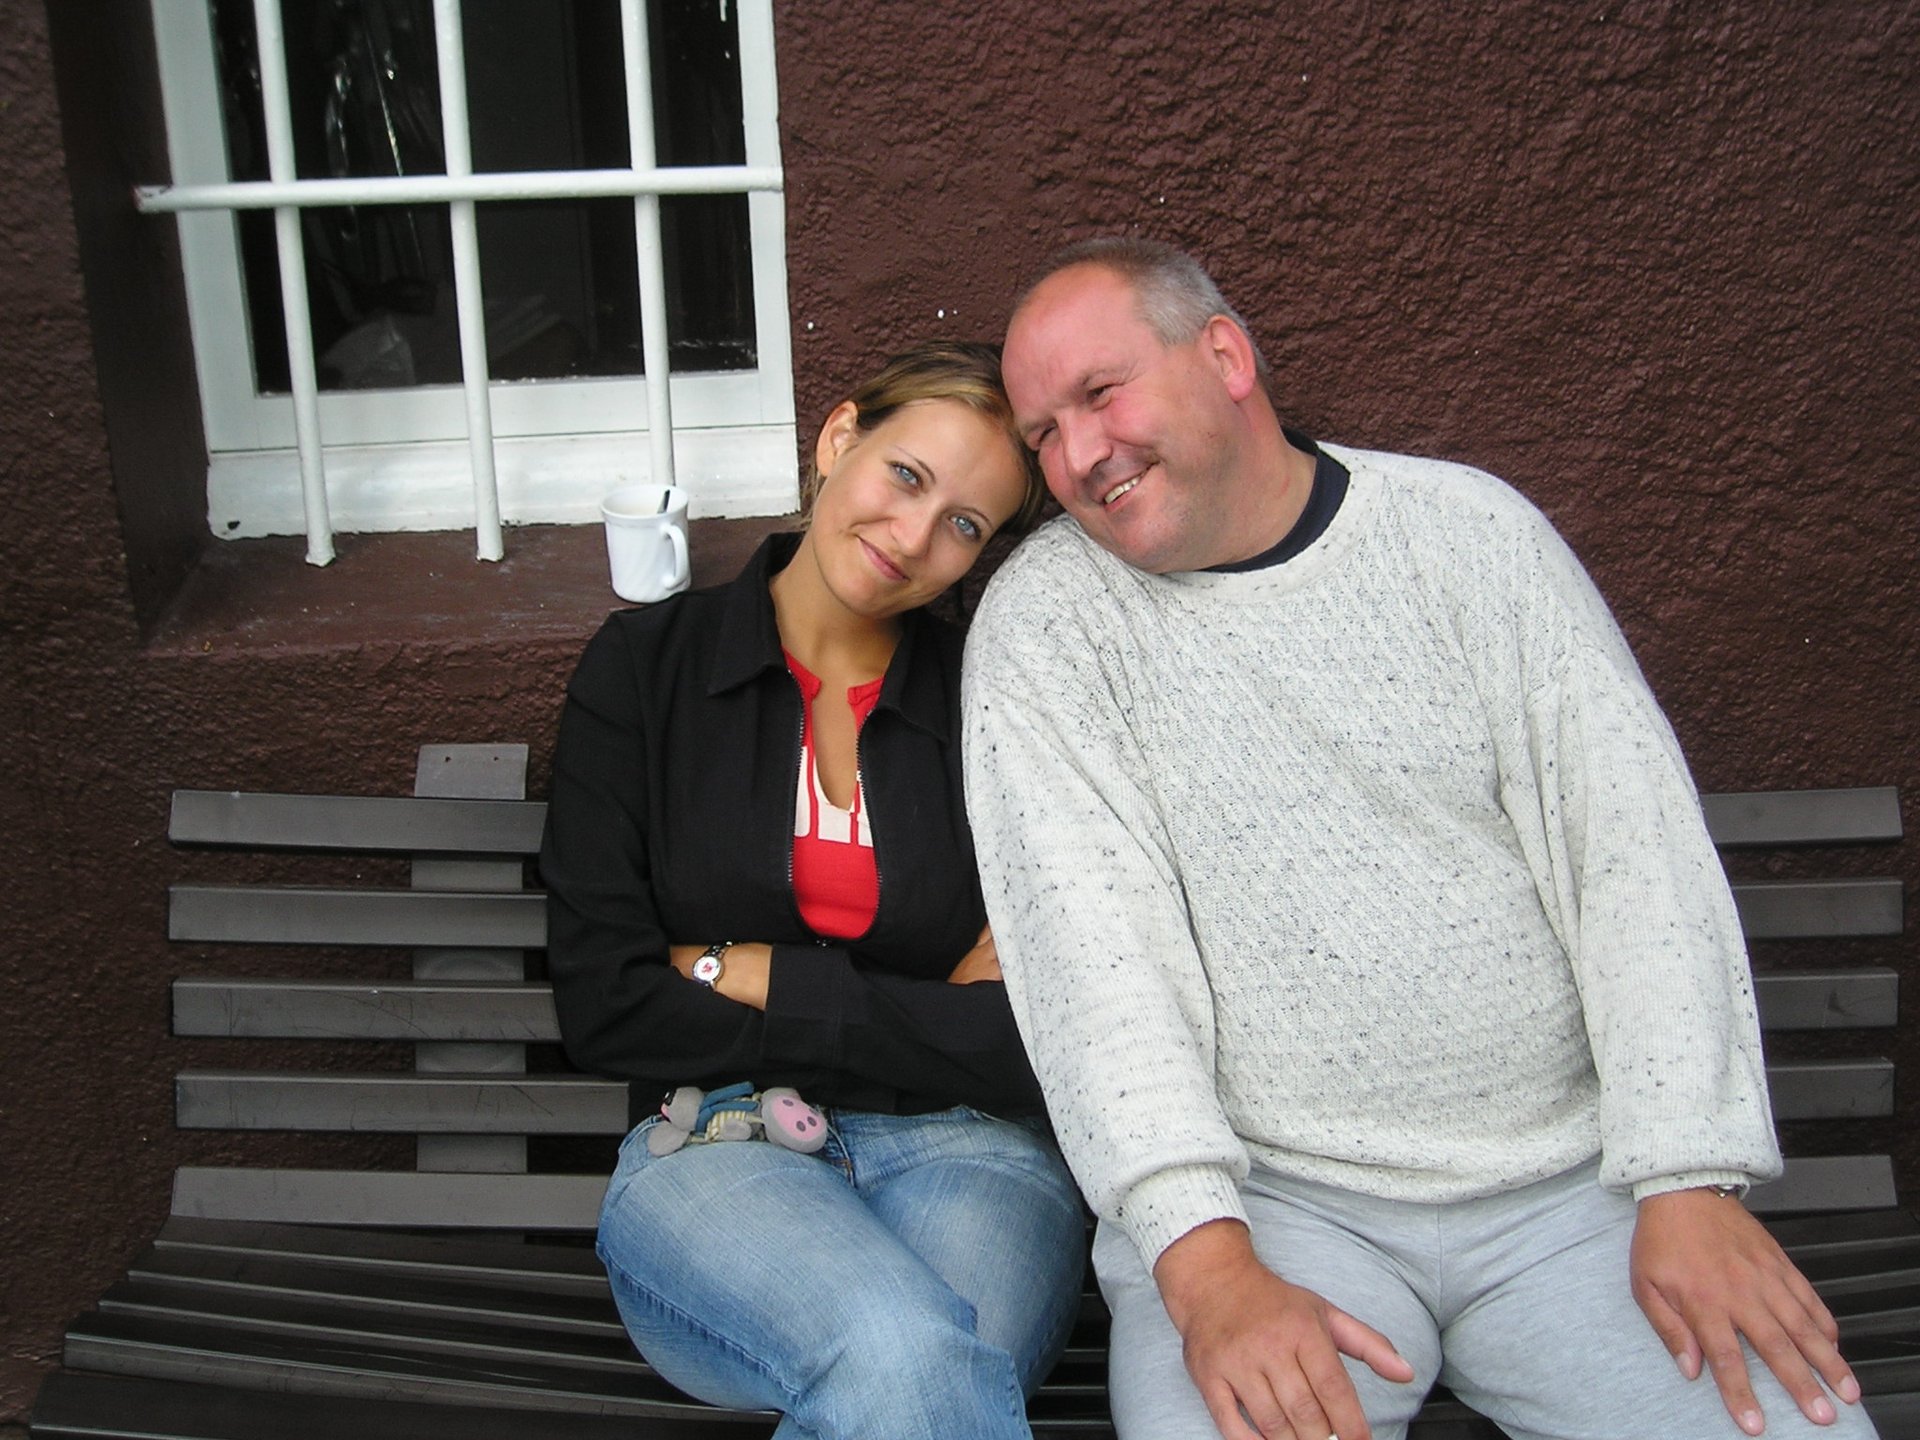 Junge Frau mit strahlend blauen Augen und ein Mann mit kurzen grauen Haaren sitzen Kopf an Kopf gelehnt auf einer Bank